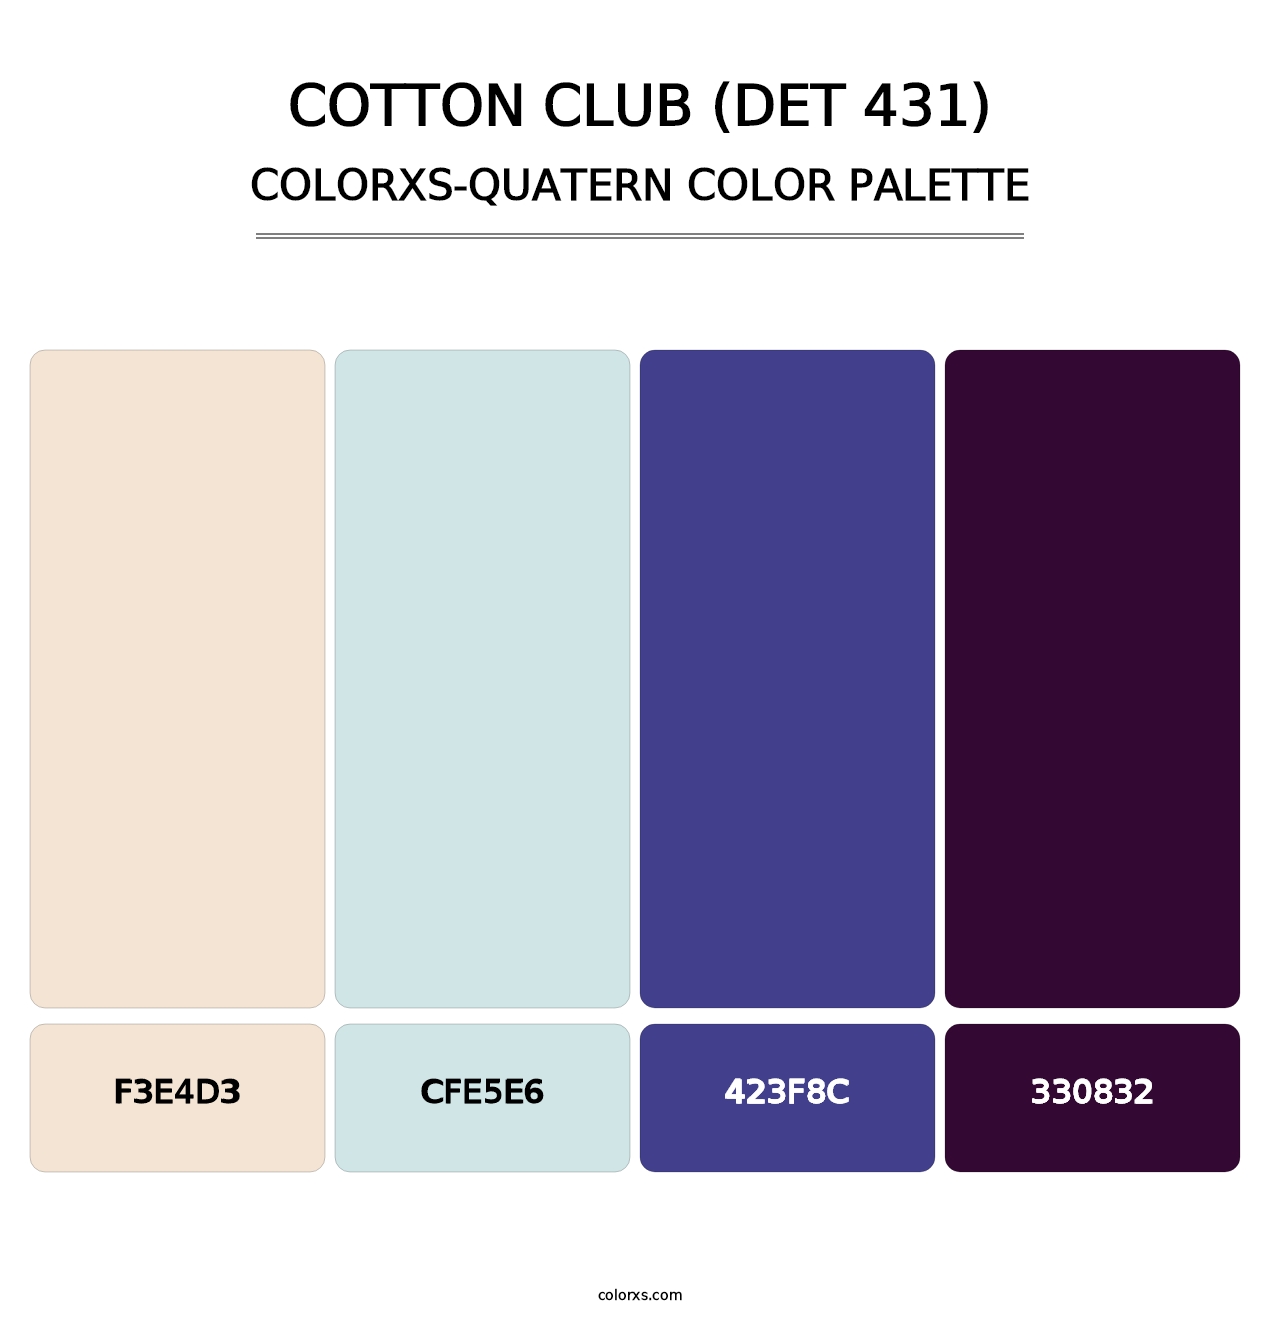 Cotton Club (DET 431) - Colorxs Quatern Palette